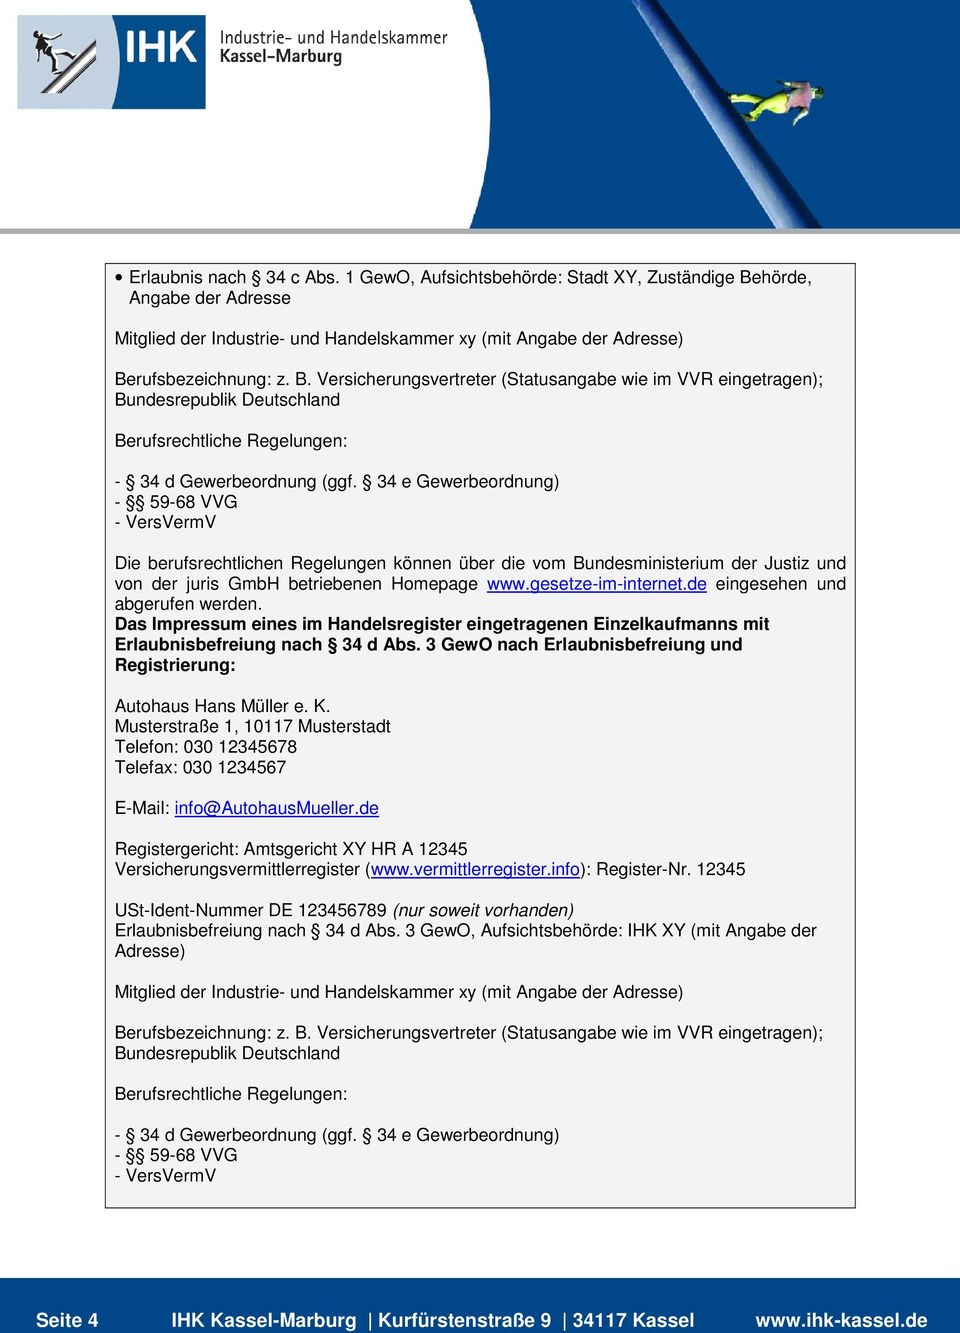 im Handelsregister eingetragenen Einzelkaufmanns mit Erlaubnisbefreiung nach 34 d Abs. 3 GewO nach Erlaubnisbefreiung und Registrierung: Autohaus Hans Müller e. K.